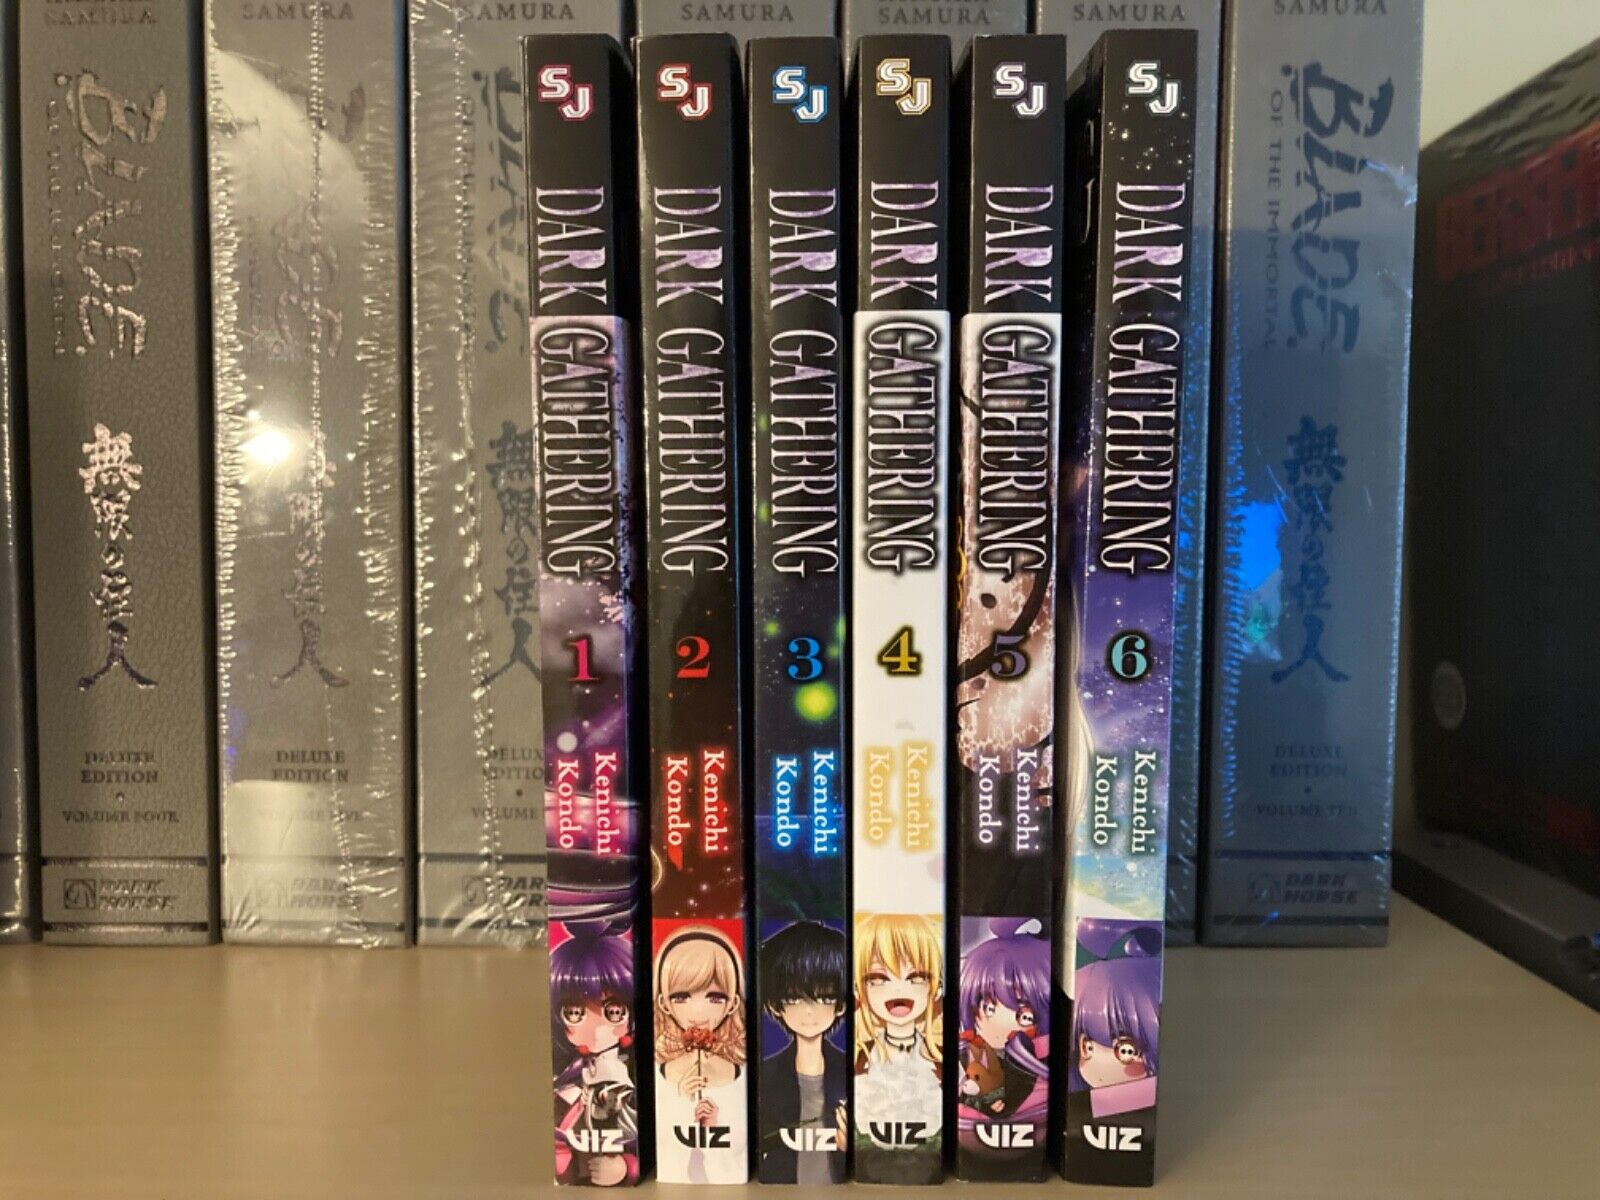 Dark Gathering Manga Set Vols. 1-6 Kenichi Kondo VIZ ENGLISH *NEW*